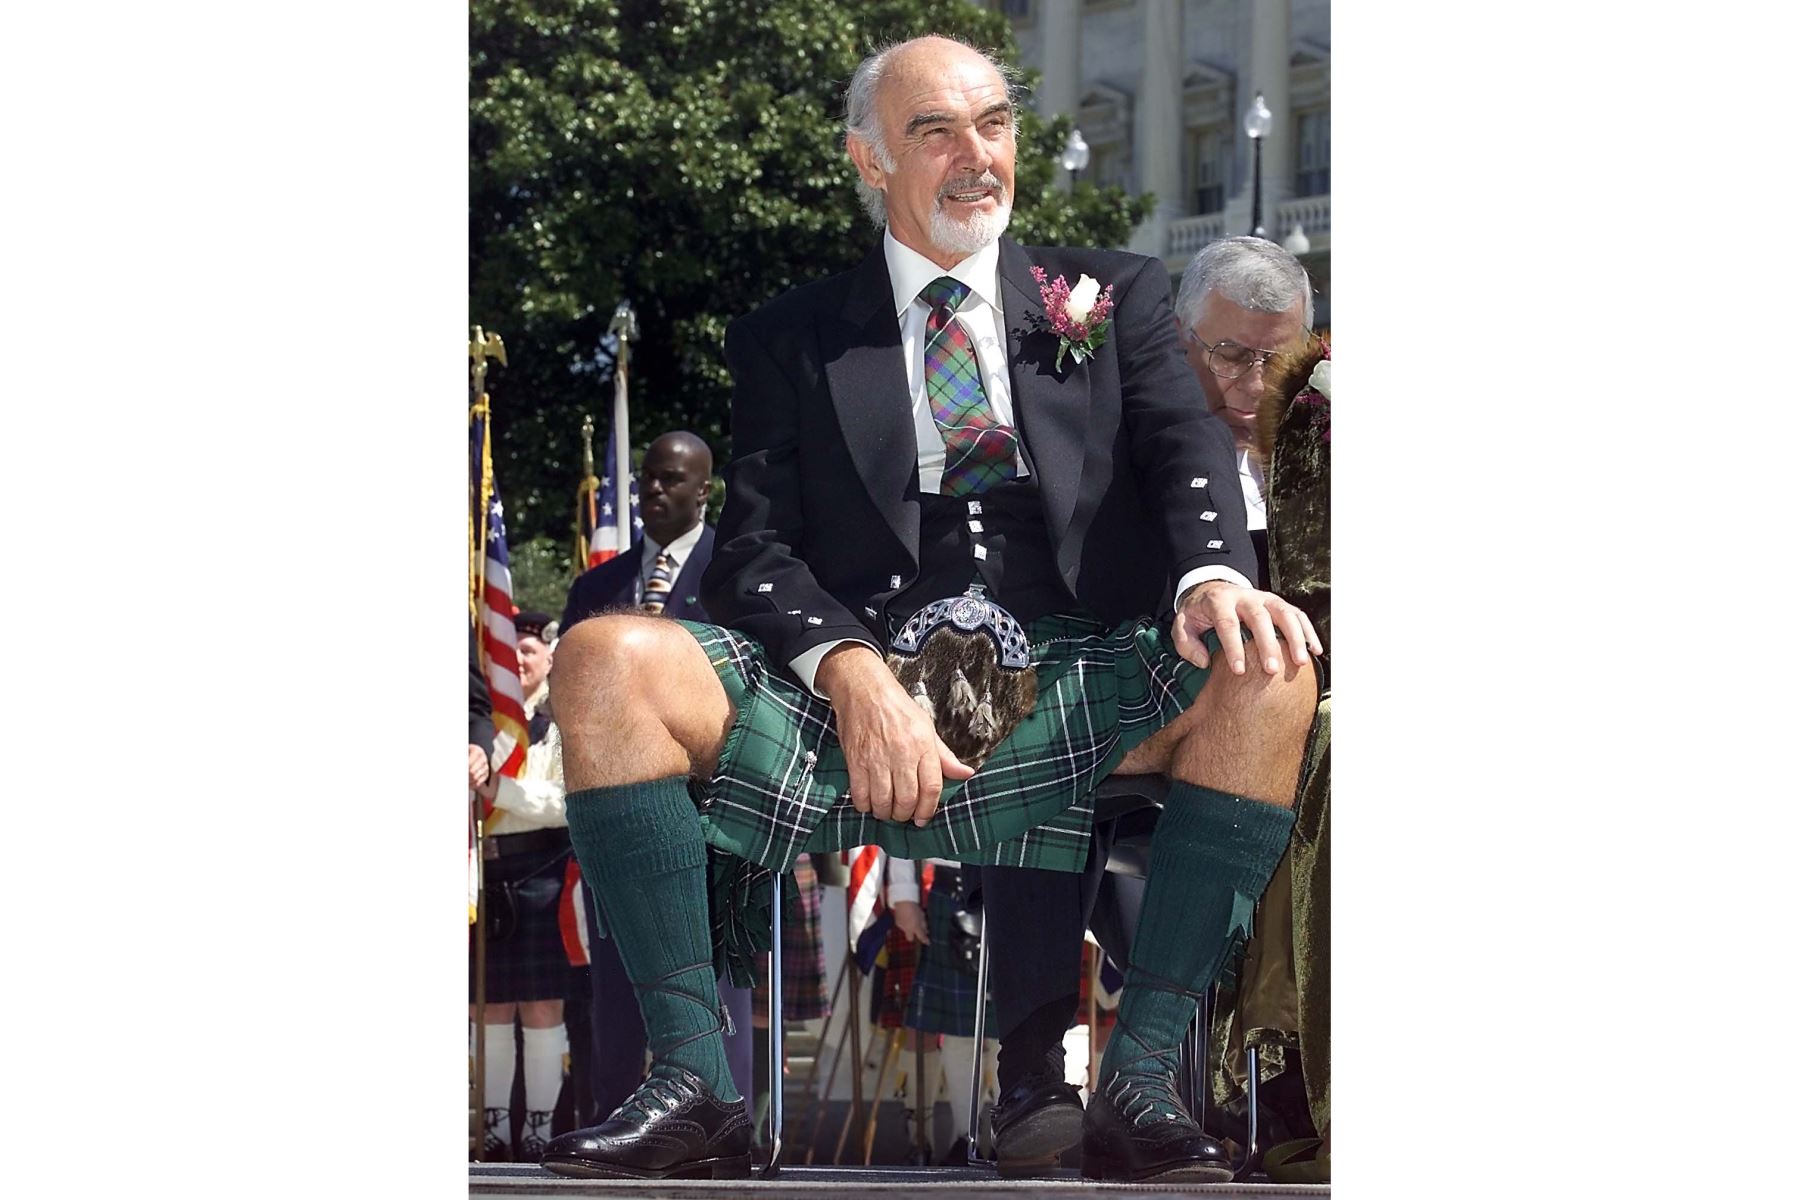 05 de abril de 2001. El actor británico Sean Connery se alista para recibir el Premio Wallace de la American Scottish Foundation en la escalinata oeste del Capitolio de los Estados Unidos en Washington, DC. Foto: AFP